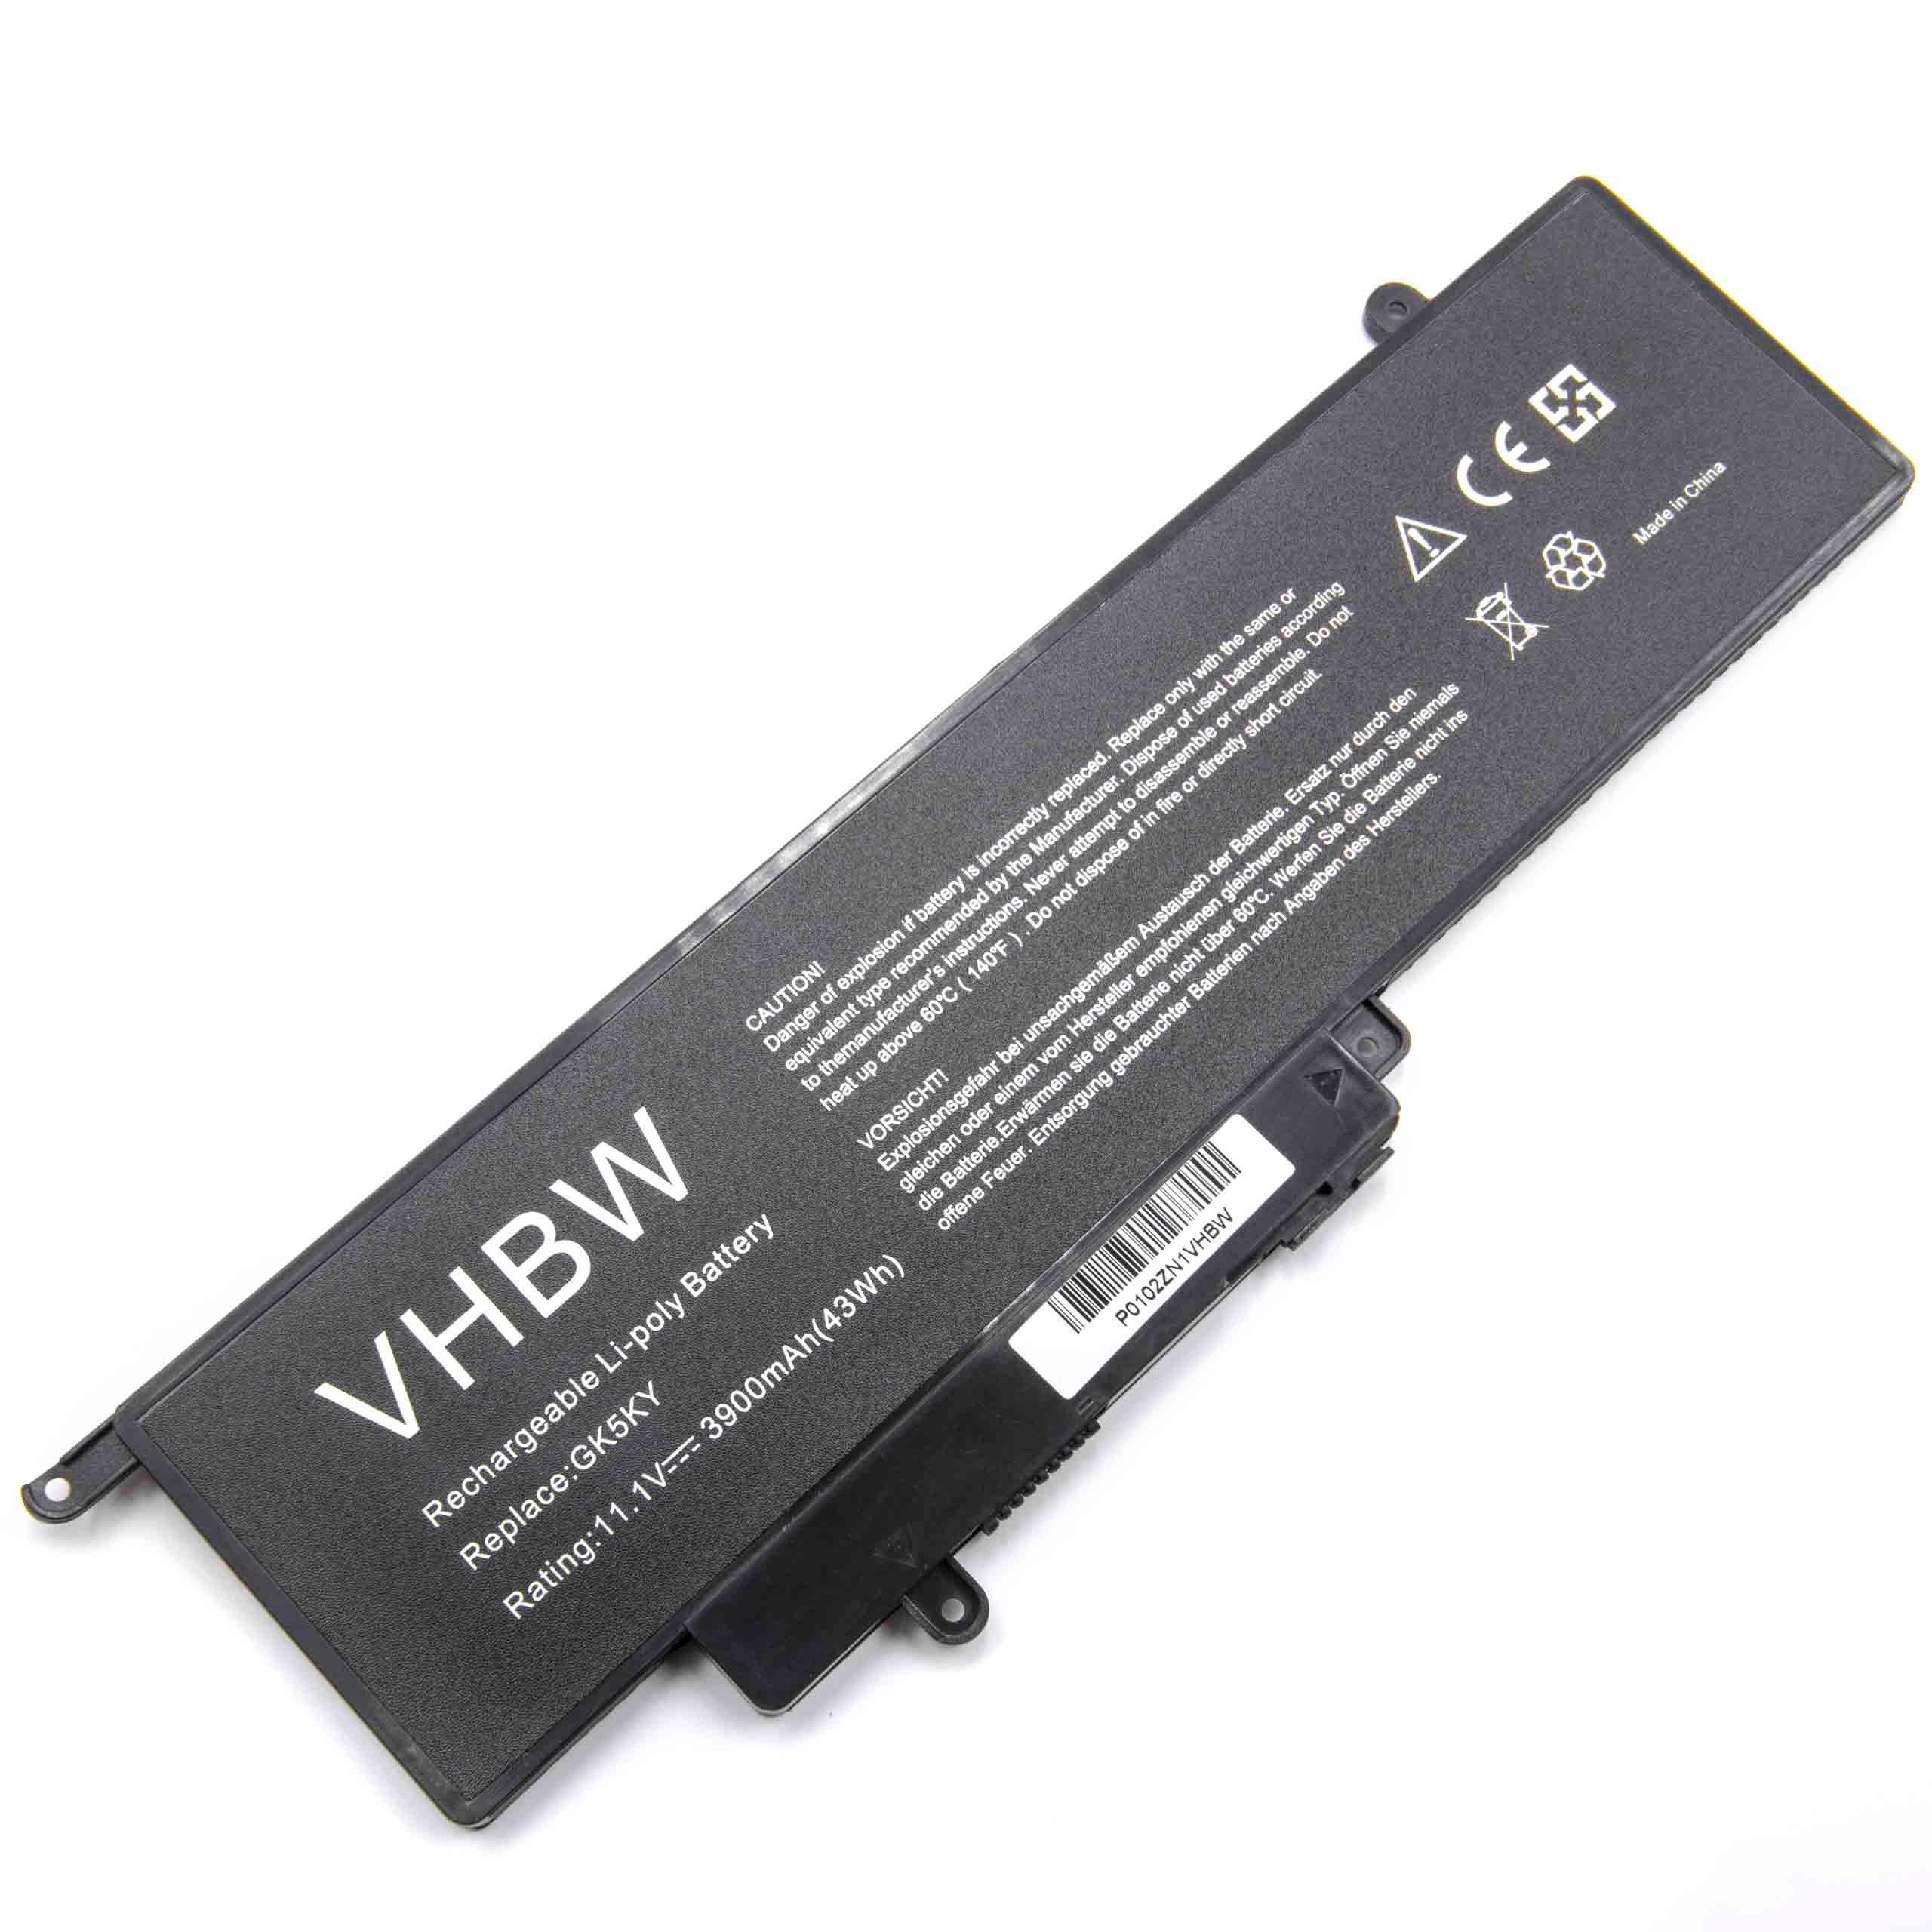 Batterie remplace Dell 04K8YH, 0WF28, 092NCT, 0GK5KY pour ordinateur portable - 3900mAh 11,1V Li-ion, noir